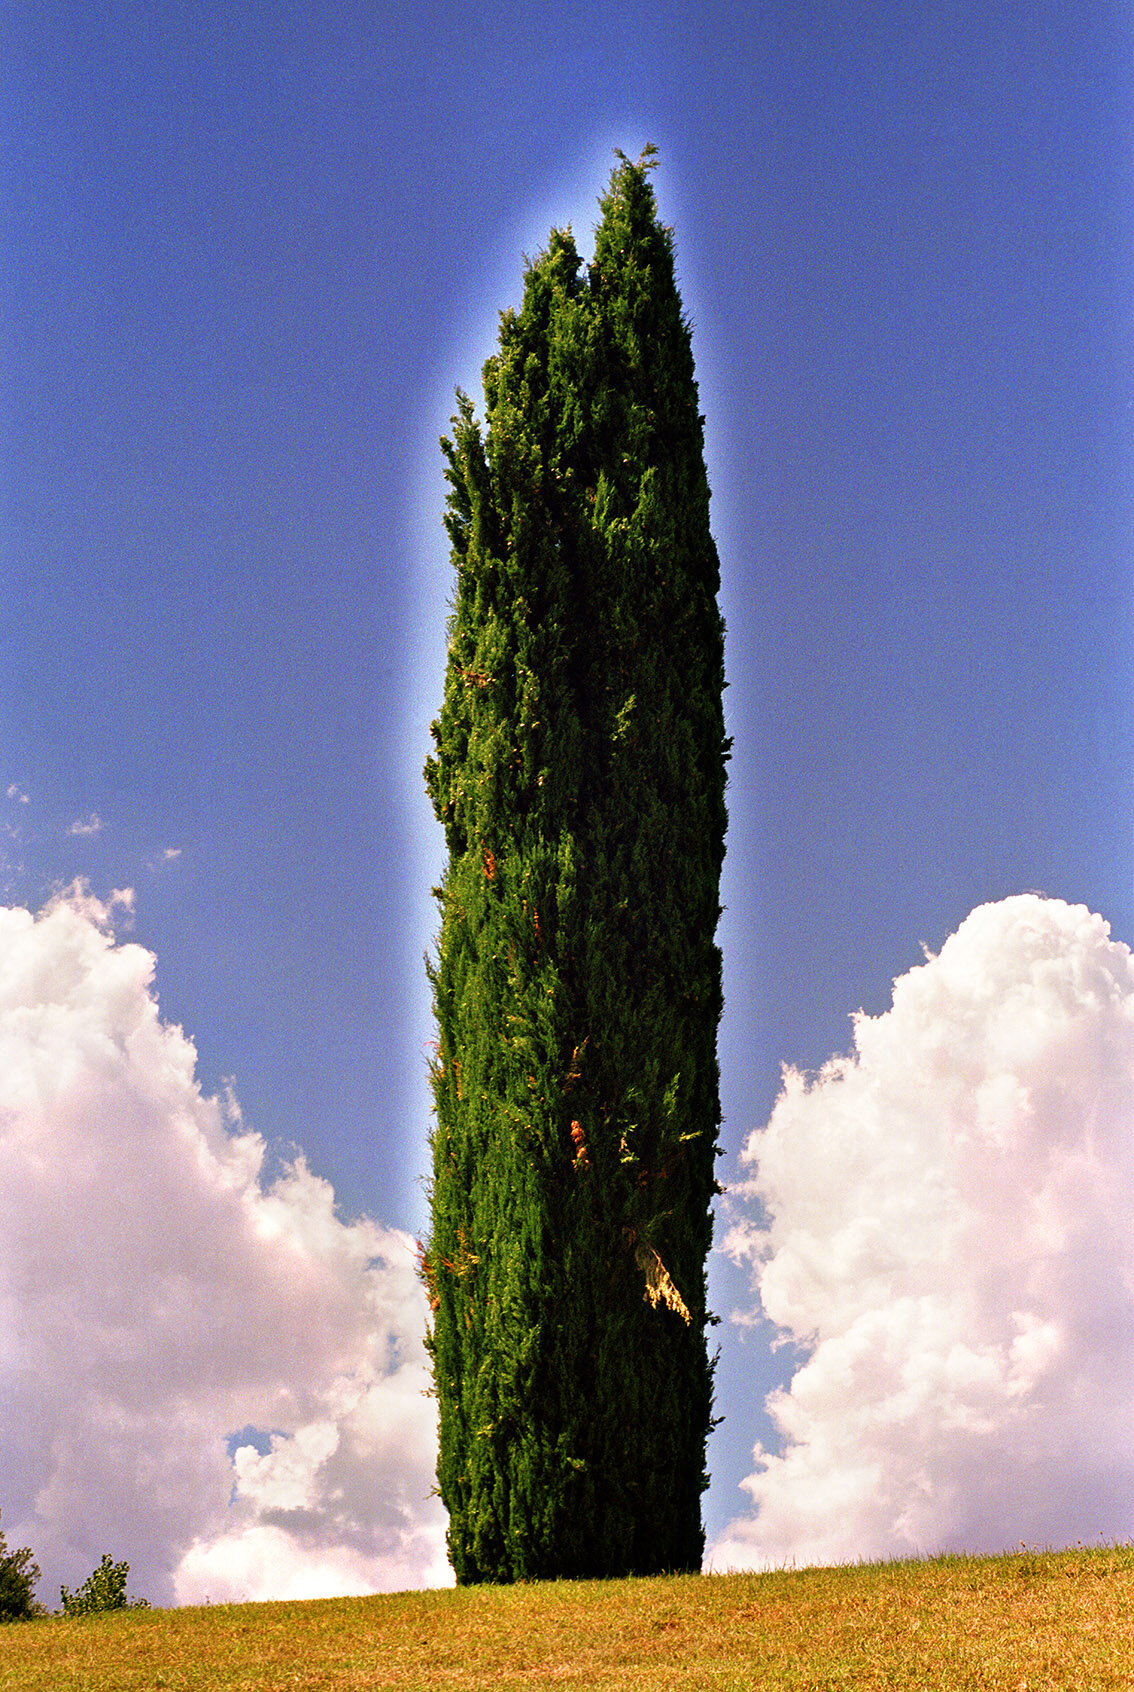  Cipariso, 2003, C-Print, 39.37 x 26.38 inches / 100 x 67 cm 